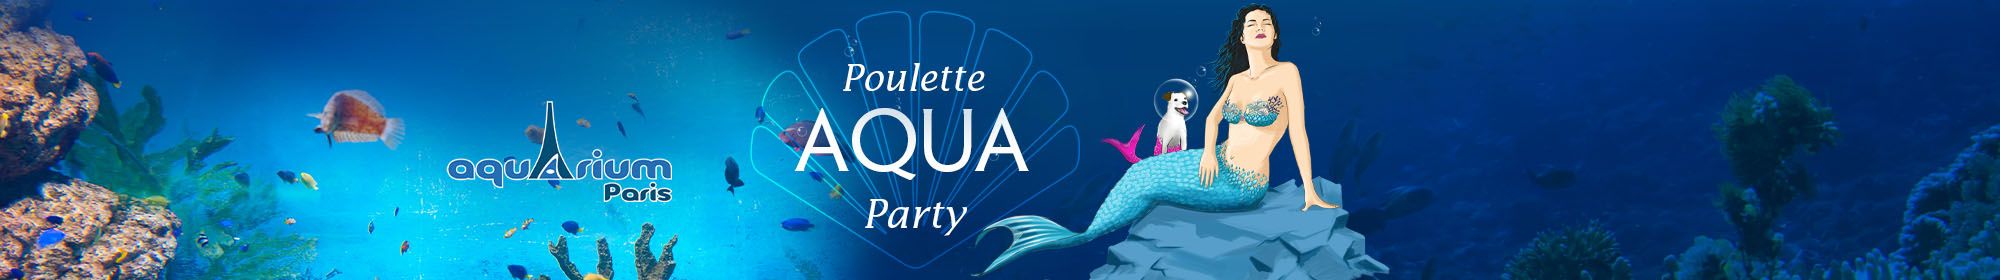 Poulette Aqua Party